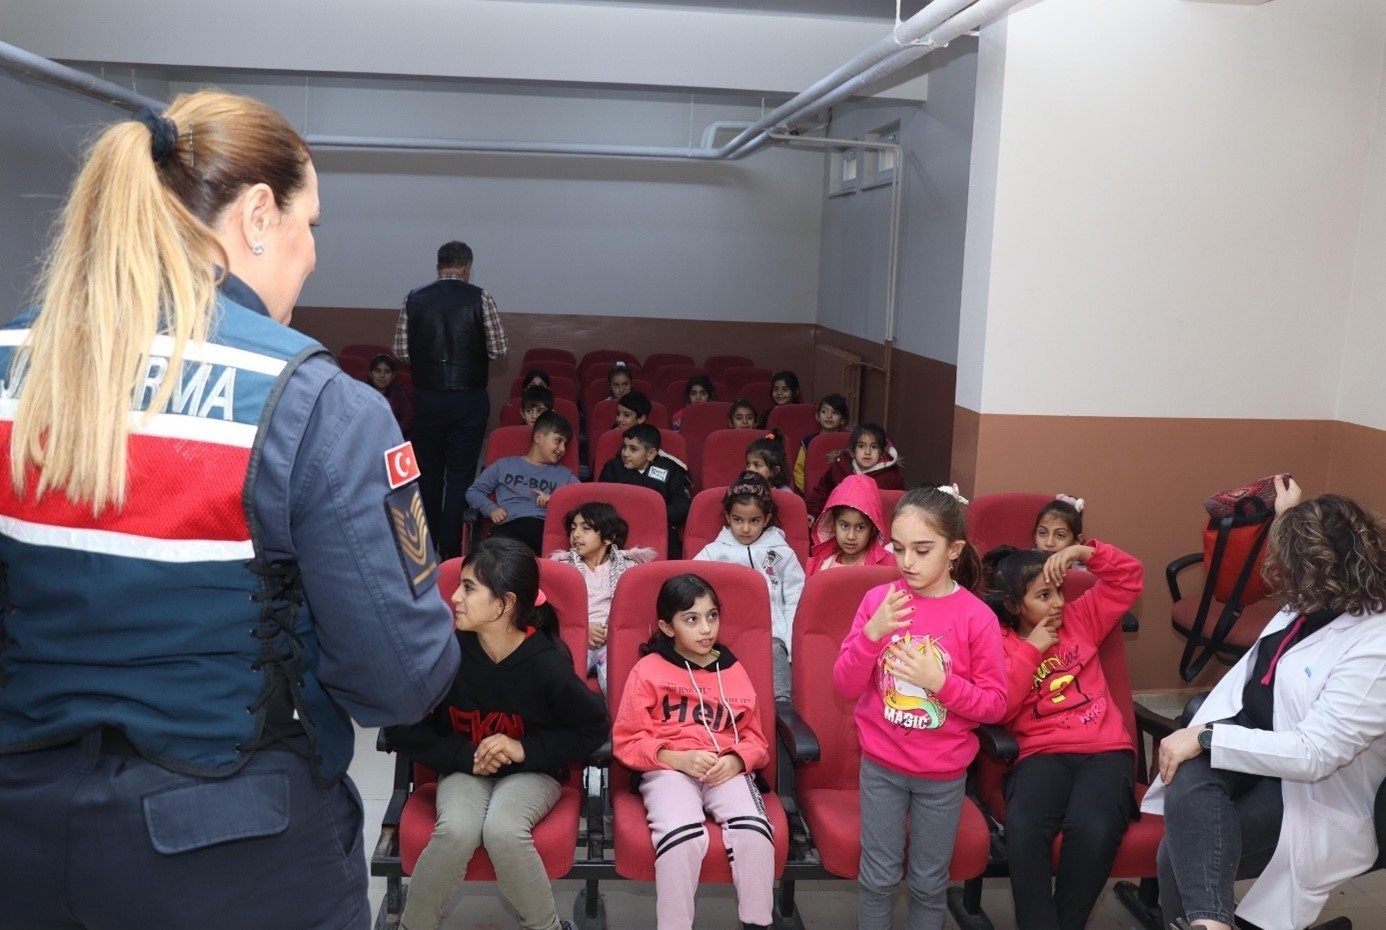 Jandarma ekiplerinden ilkokul öğrencilerine ziyaret